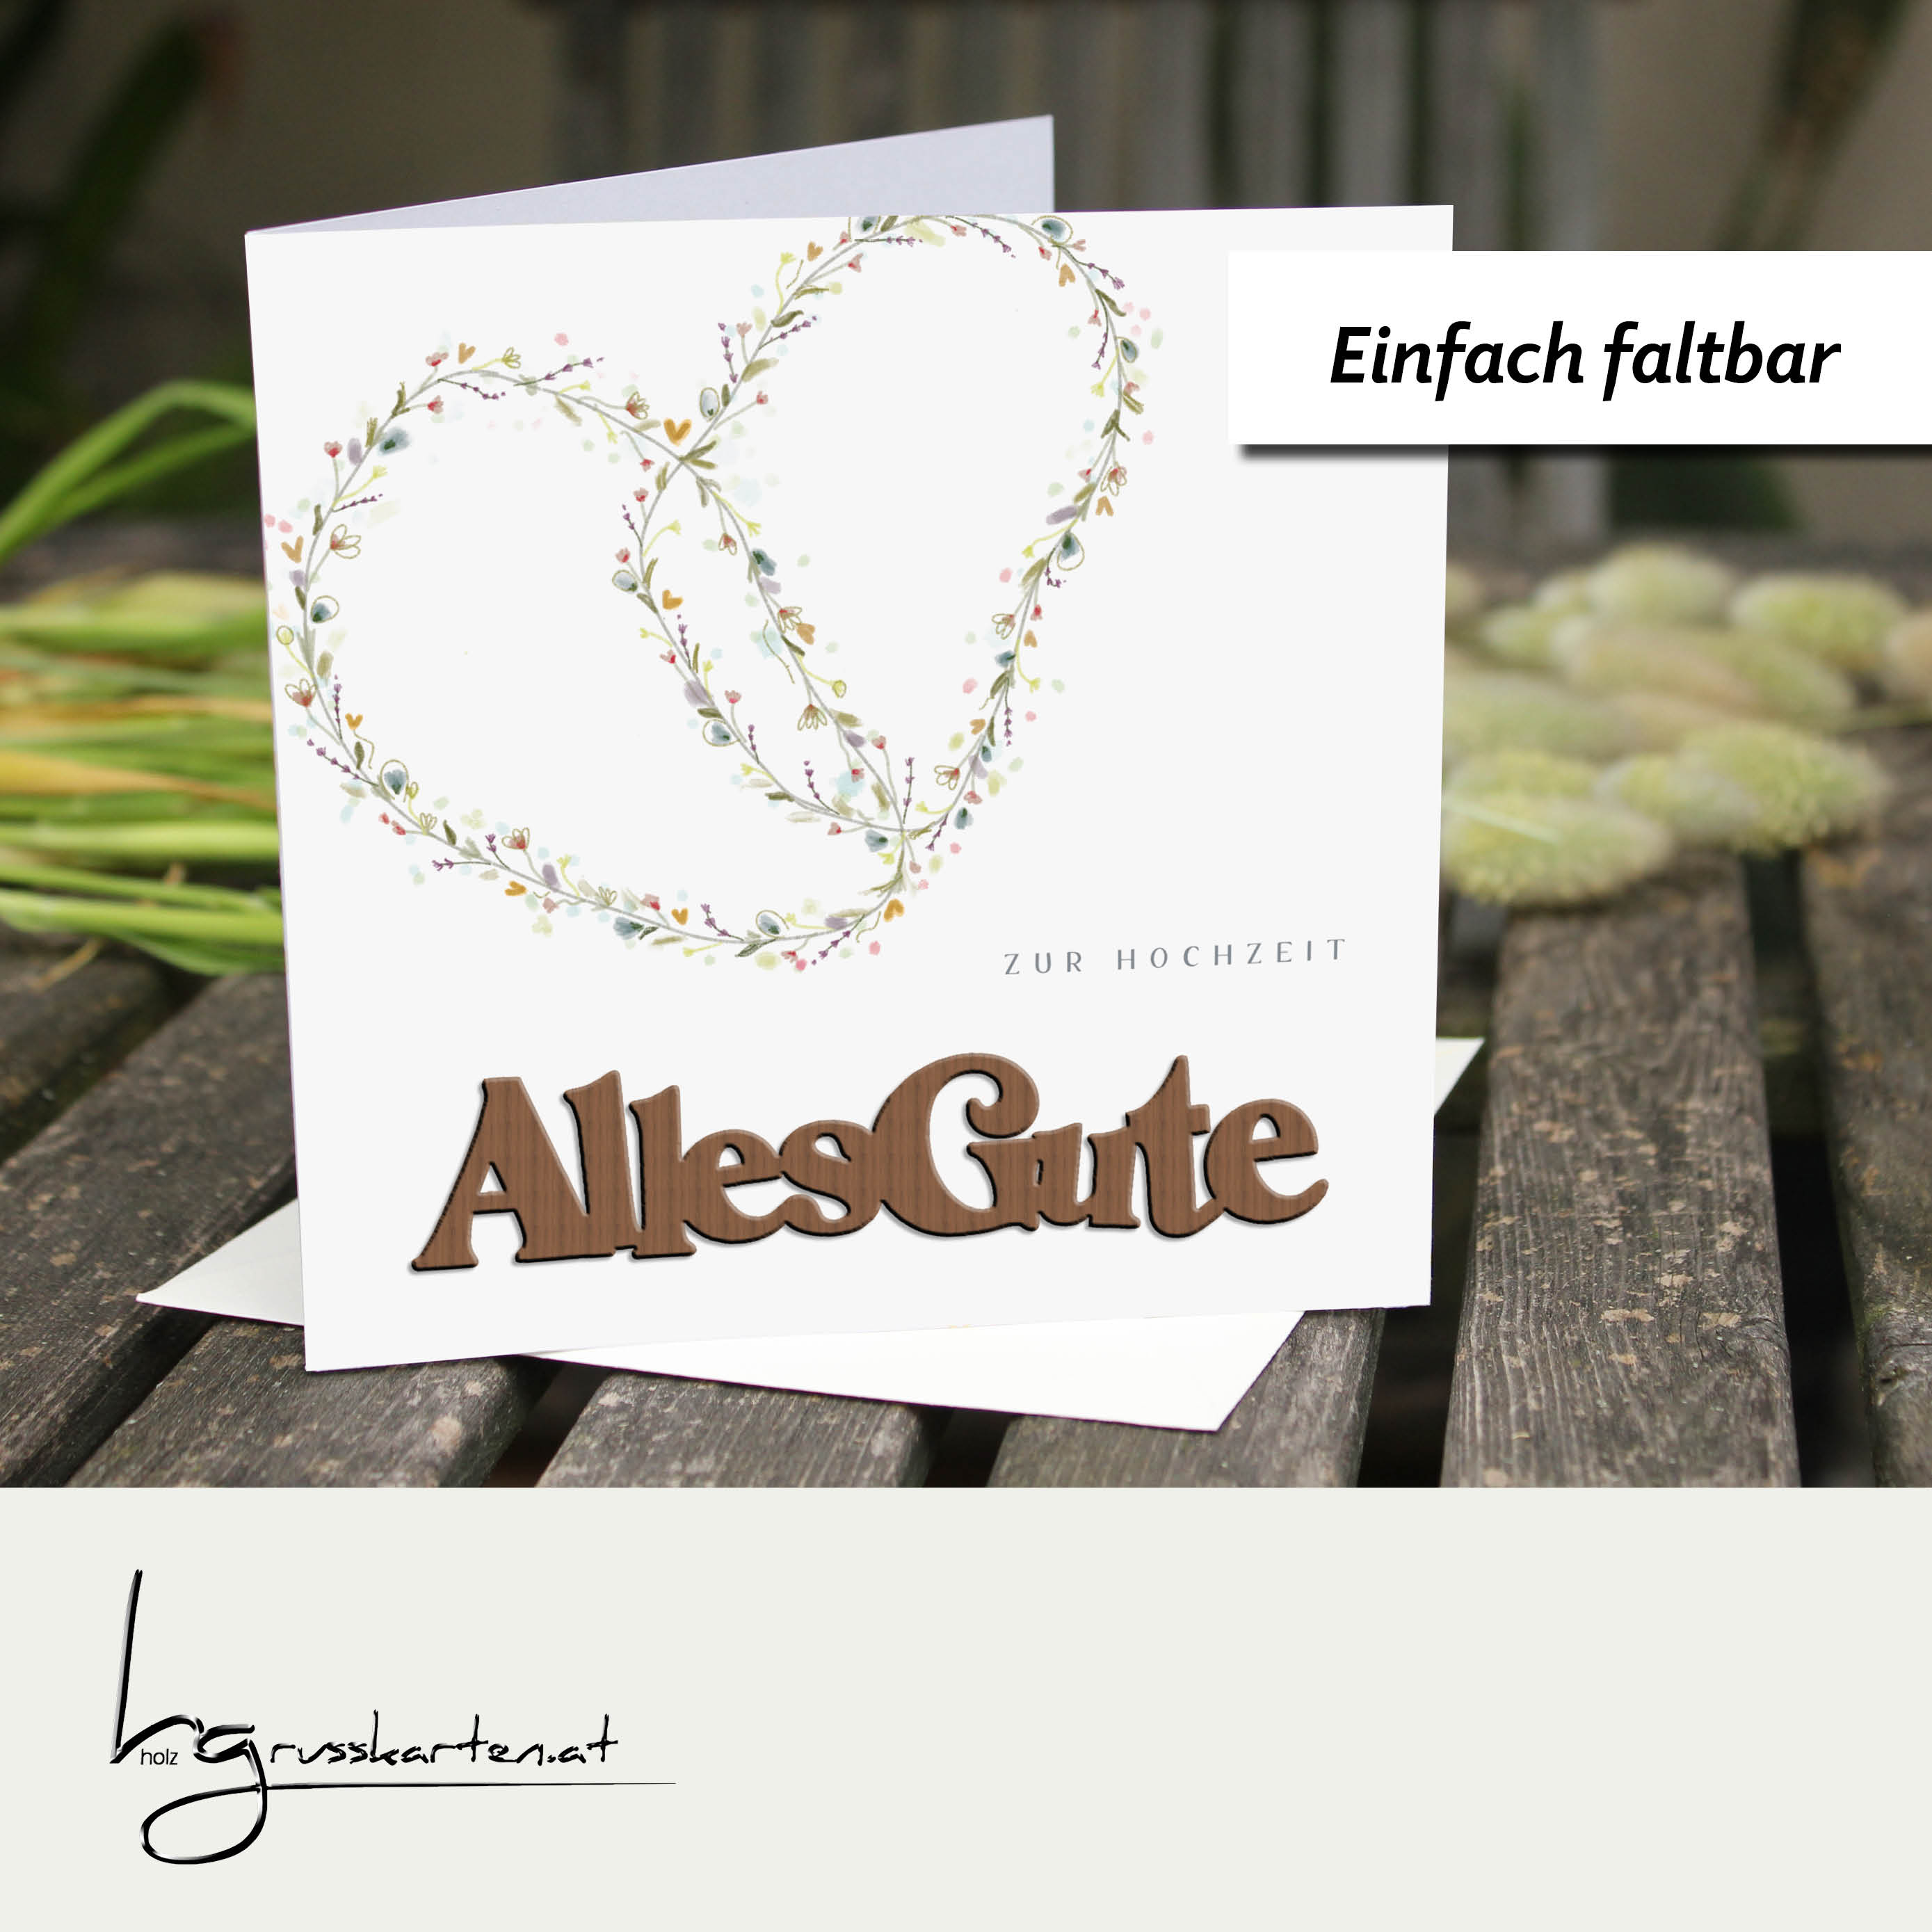 Holzgrusskarten - Hochzeitskarte "Blumenherzen - Zur Hochzeit" aus Recyclingkarton mit aufgeklebtem "Alles Gute" aus Nussholz